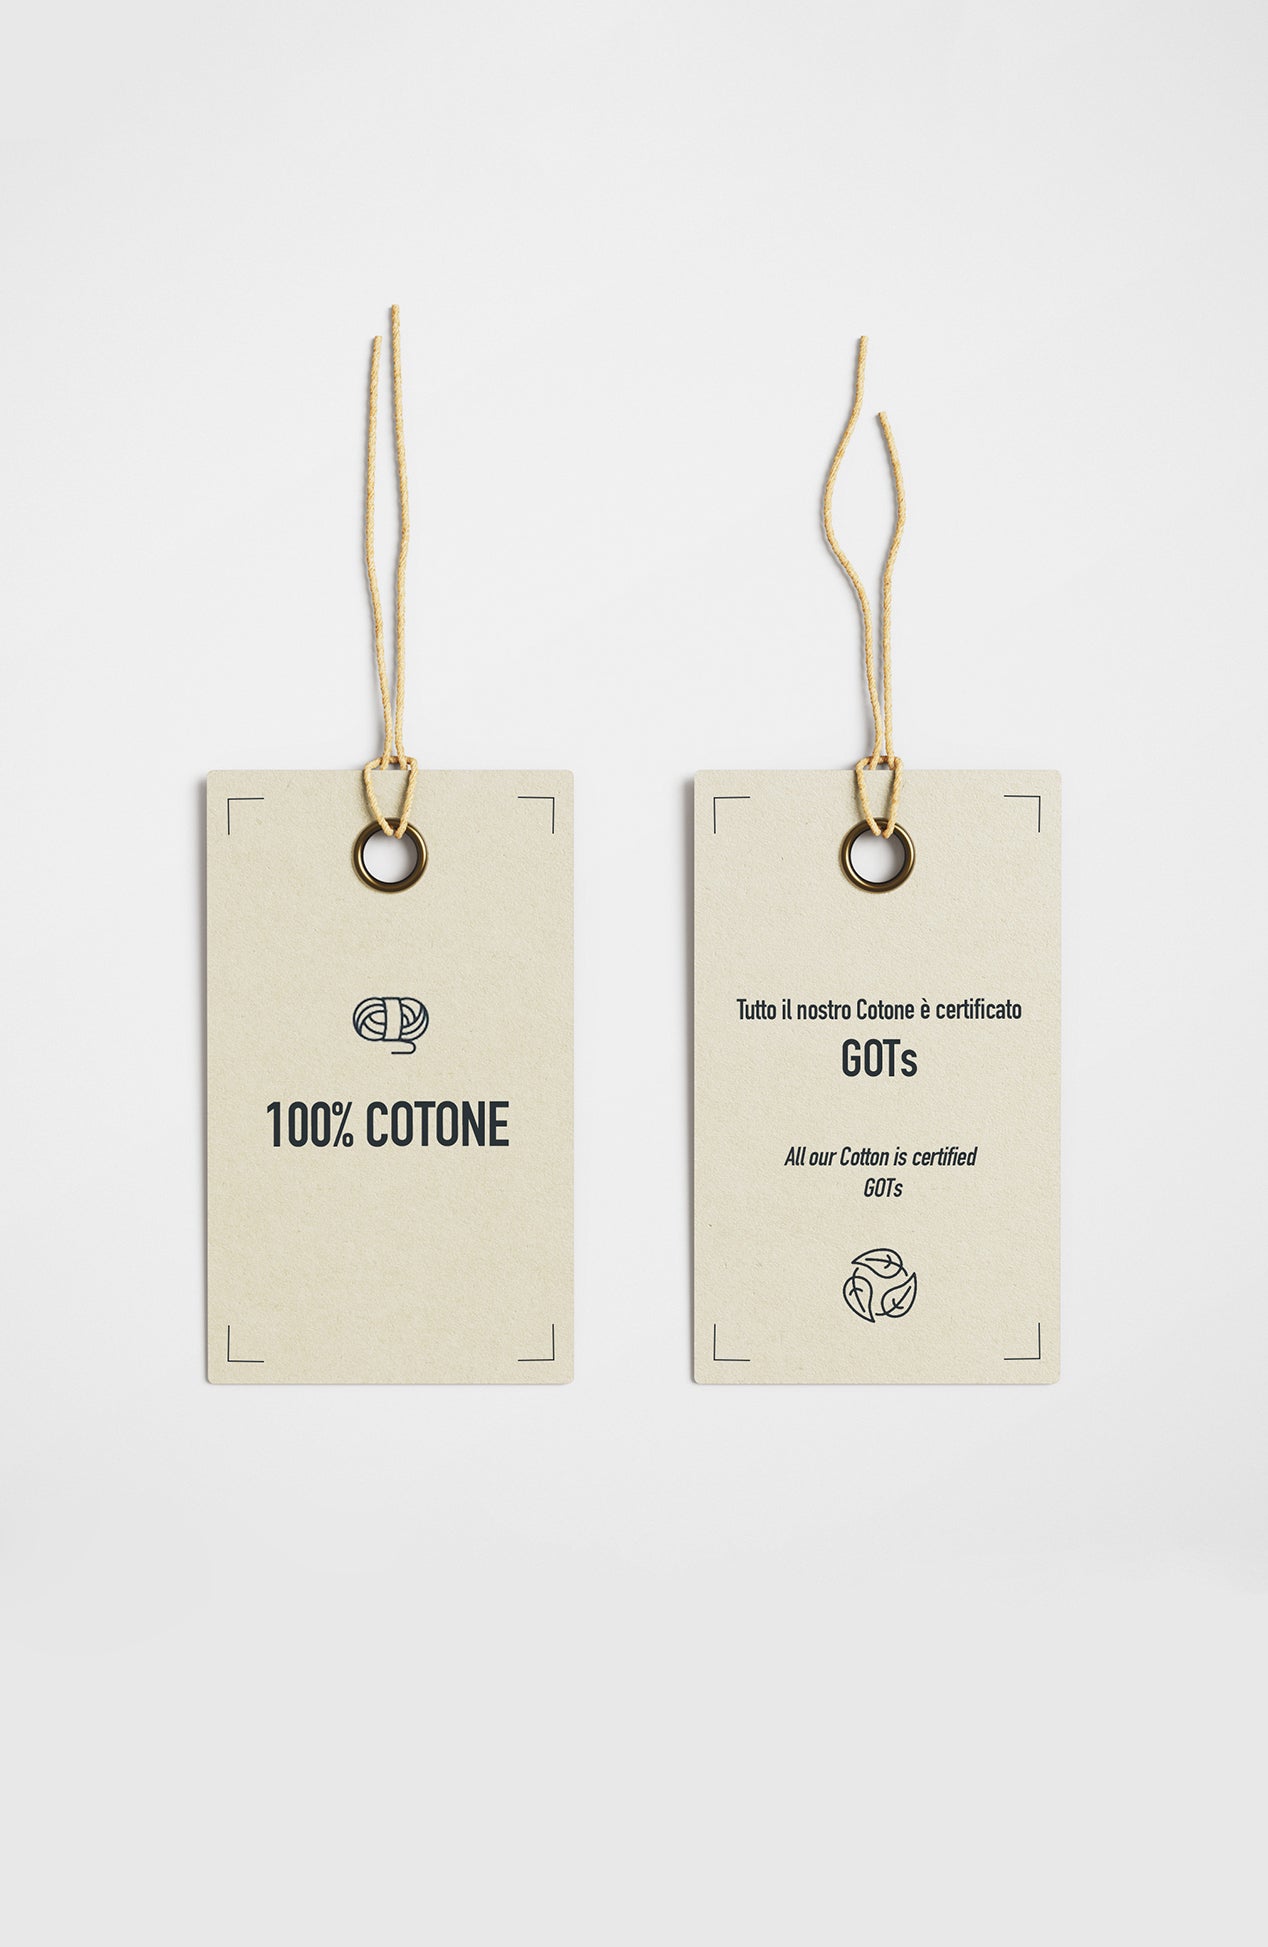 100% cotton label